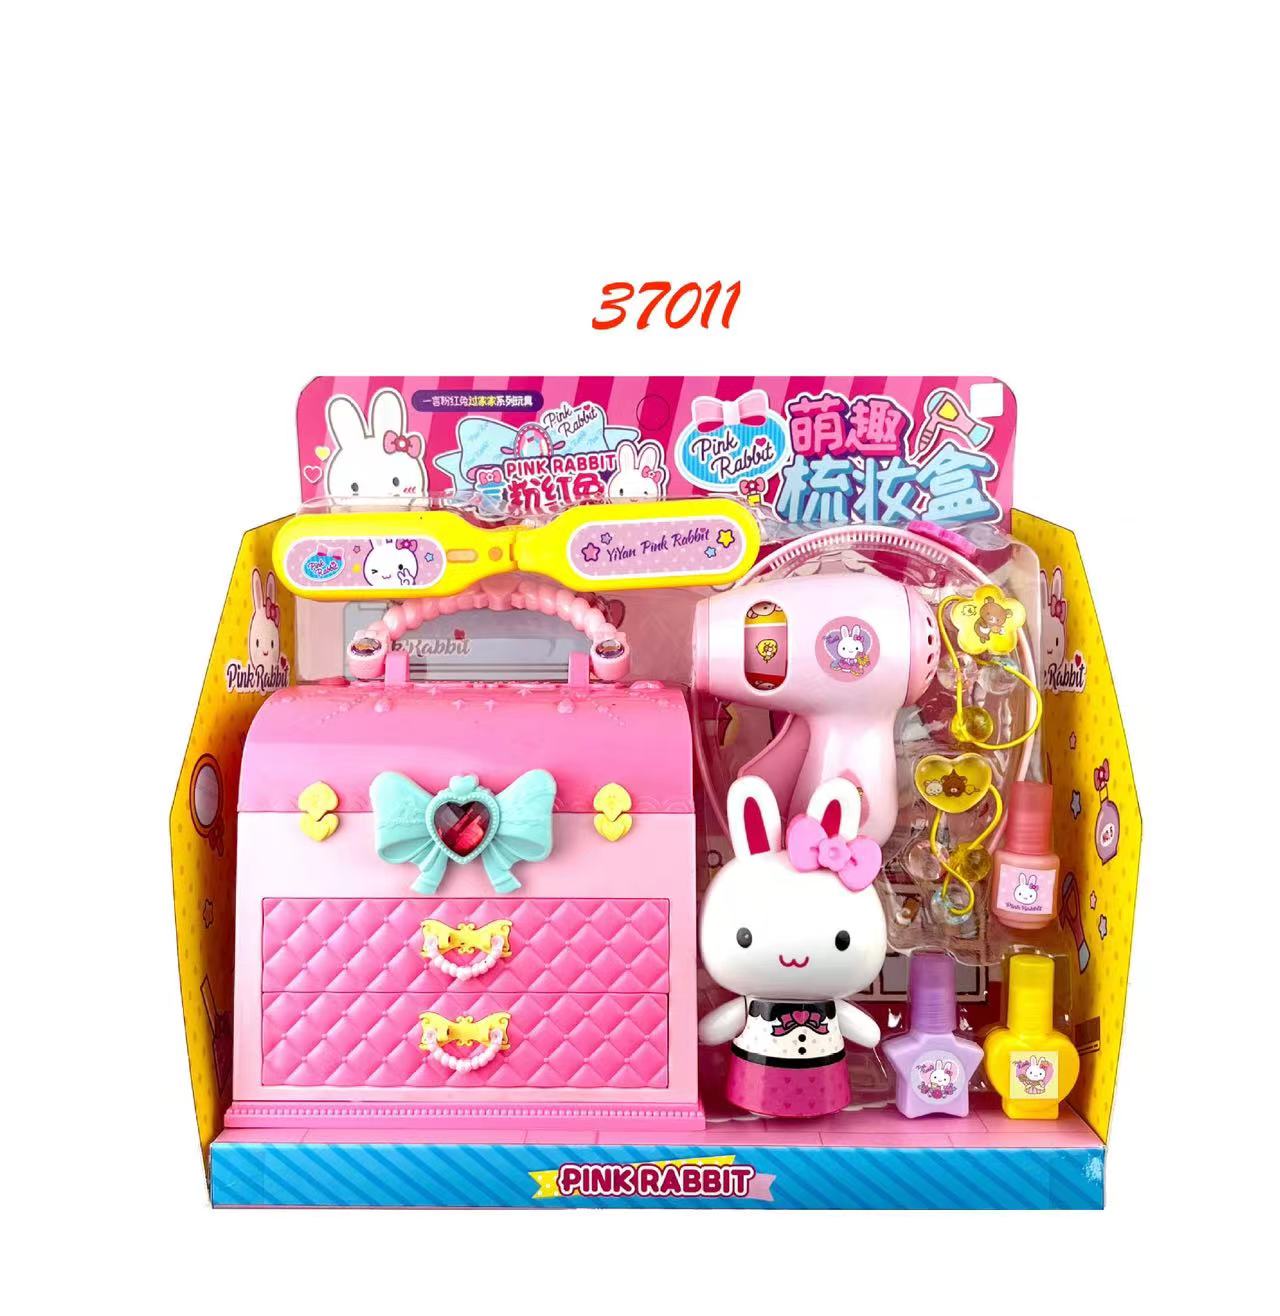 一言粉红兔女孩迷你化妆台蛋糕派对榨汁机洗衣机冰箱儿童厨房玩具